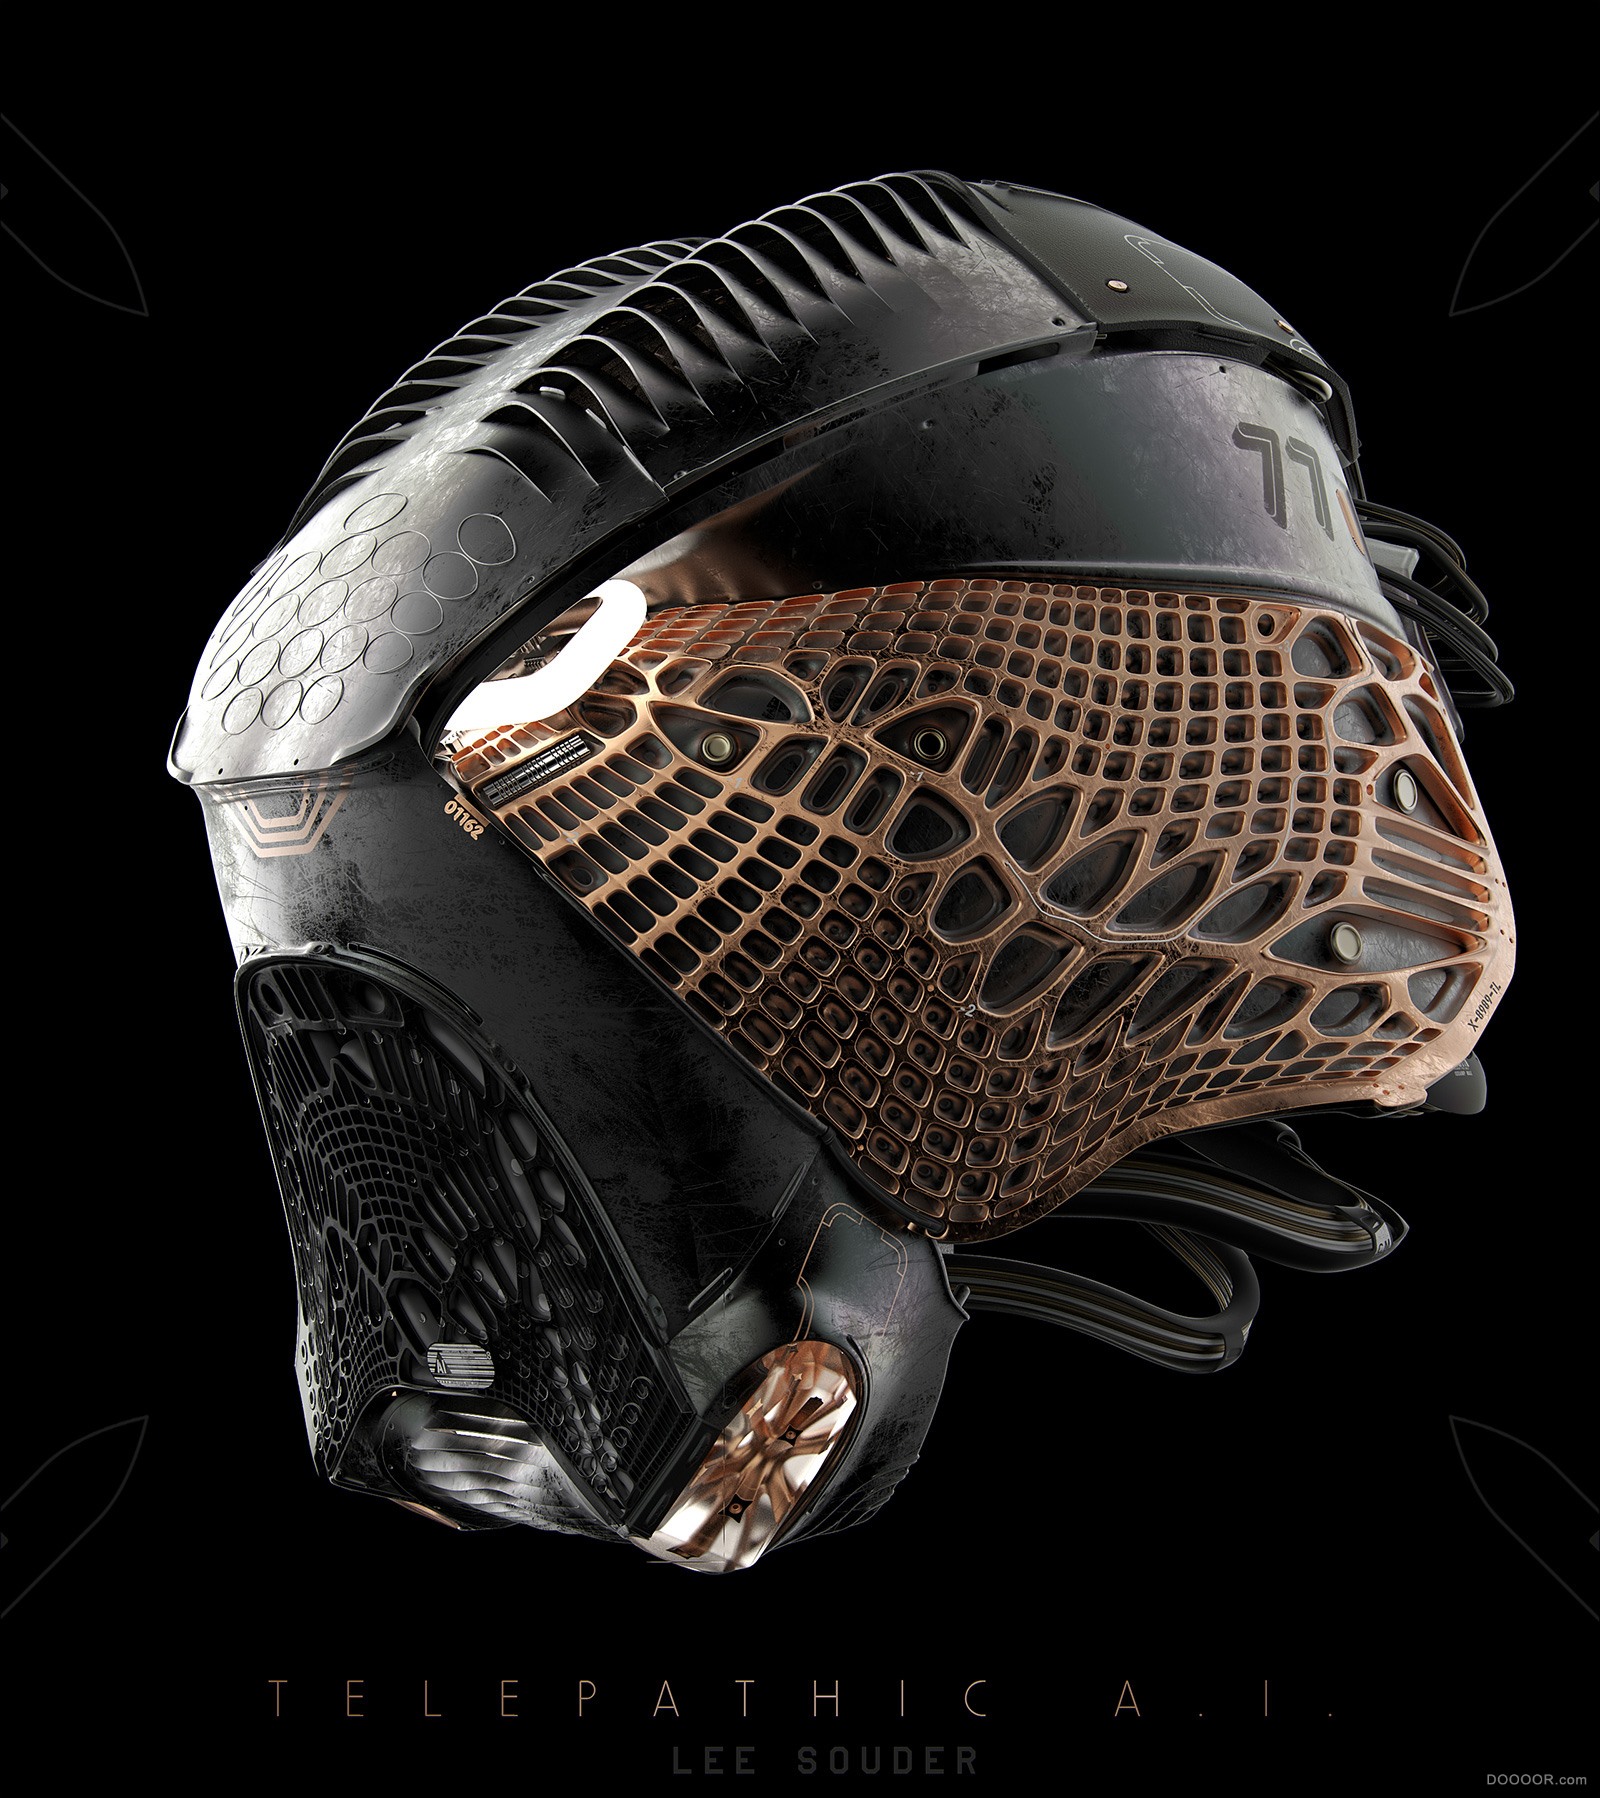 头盔&amp;战甲&amp;机器人设计-美国Lee Souder [36P] (8).jpg